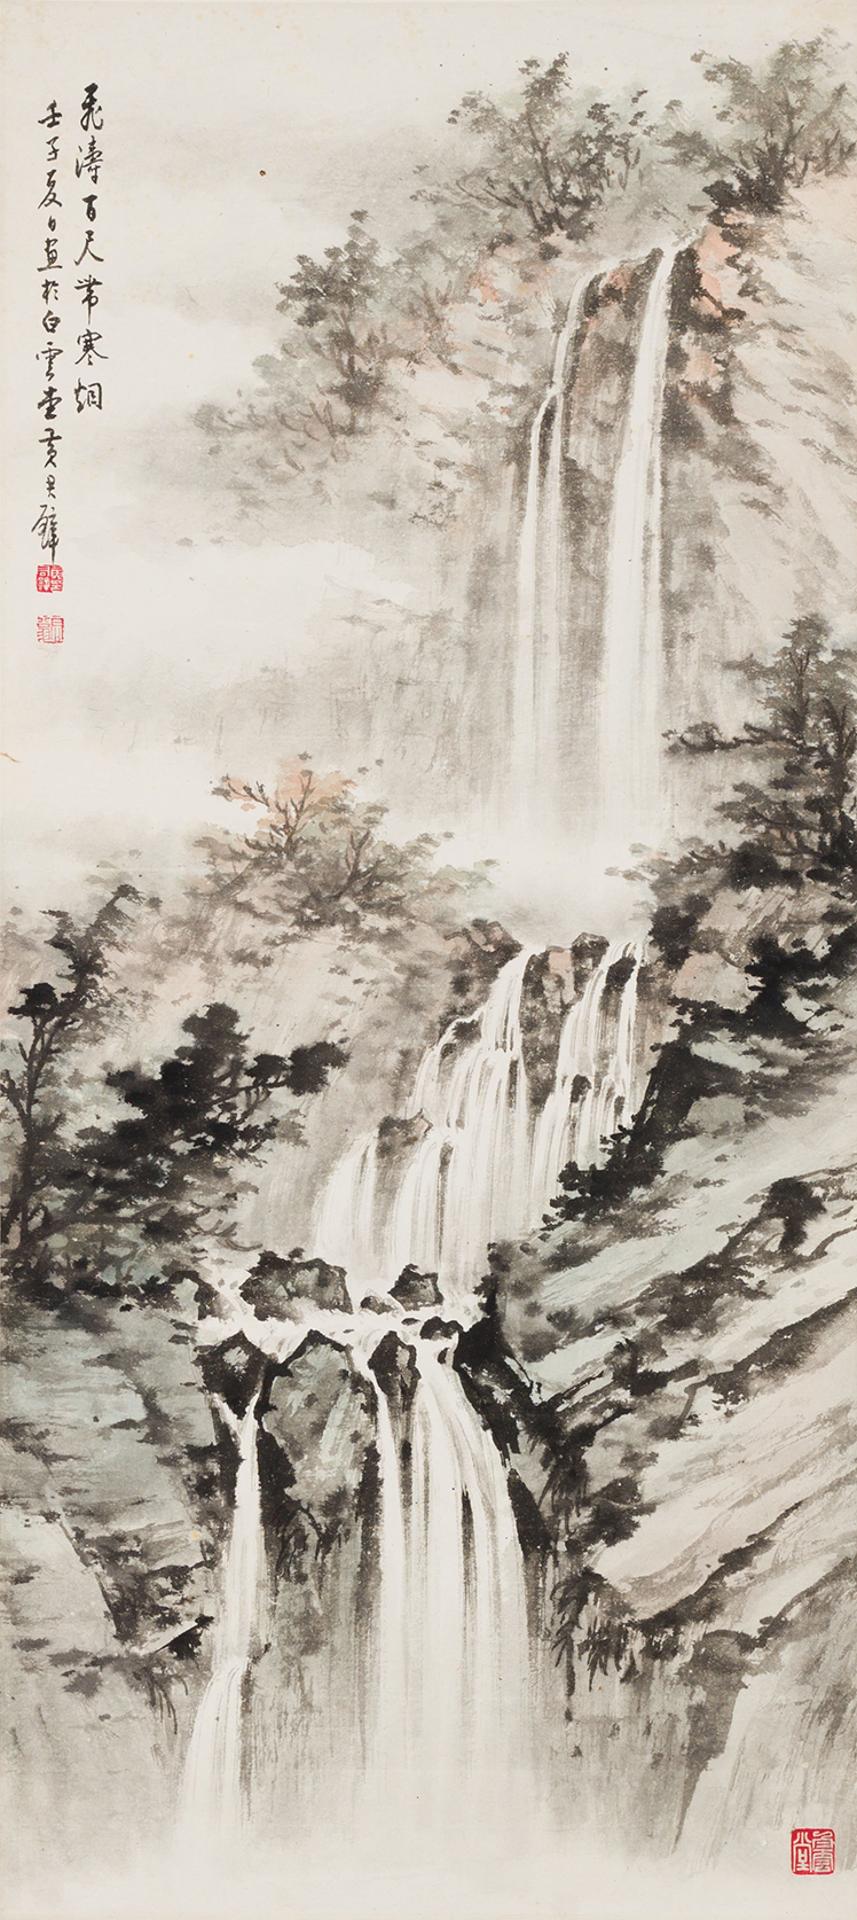 Huang Junbi (1898-1991) - Thundering Waterfalls